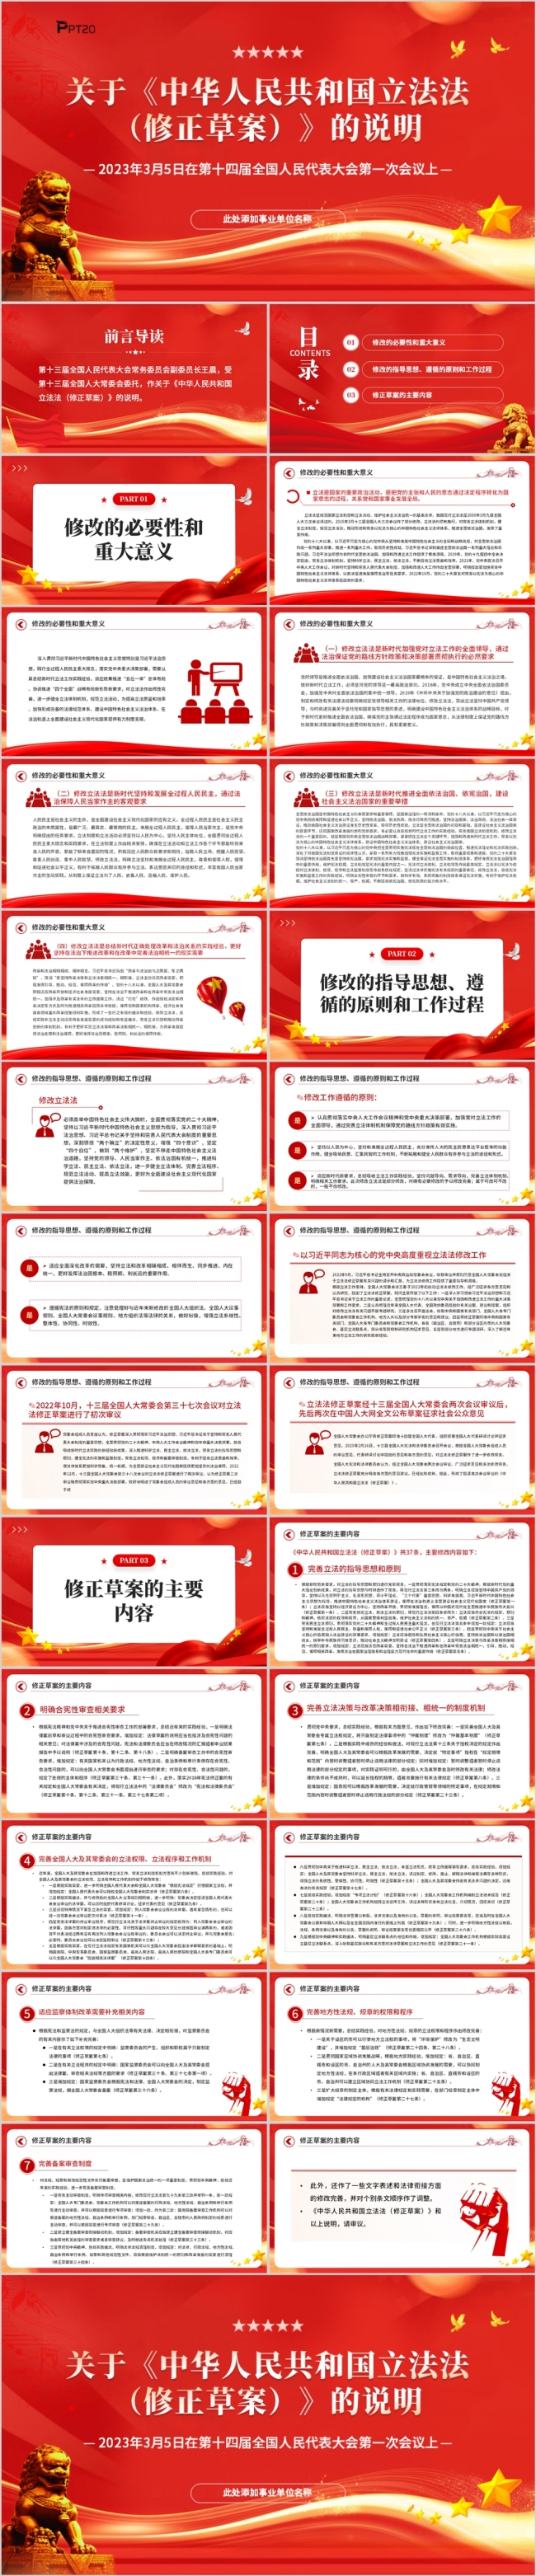 关于中华人民共和国立法法修正草案的说明PPT党课